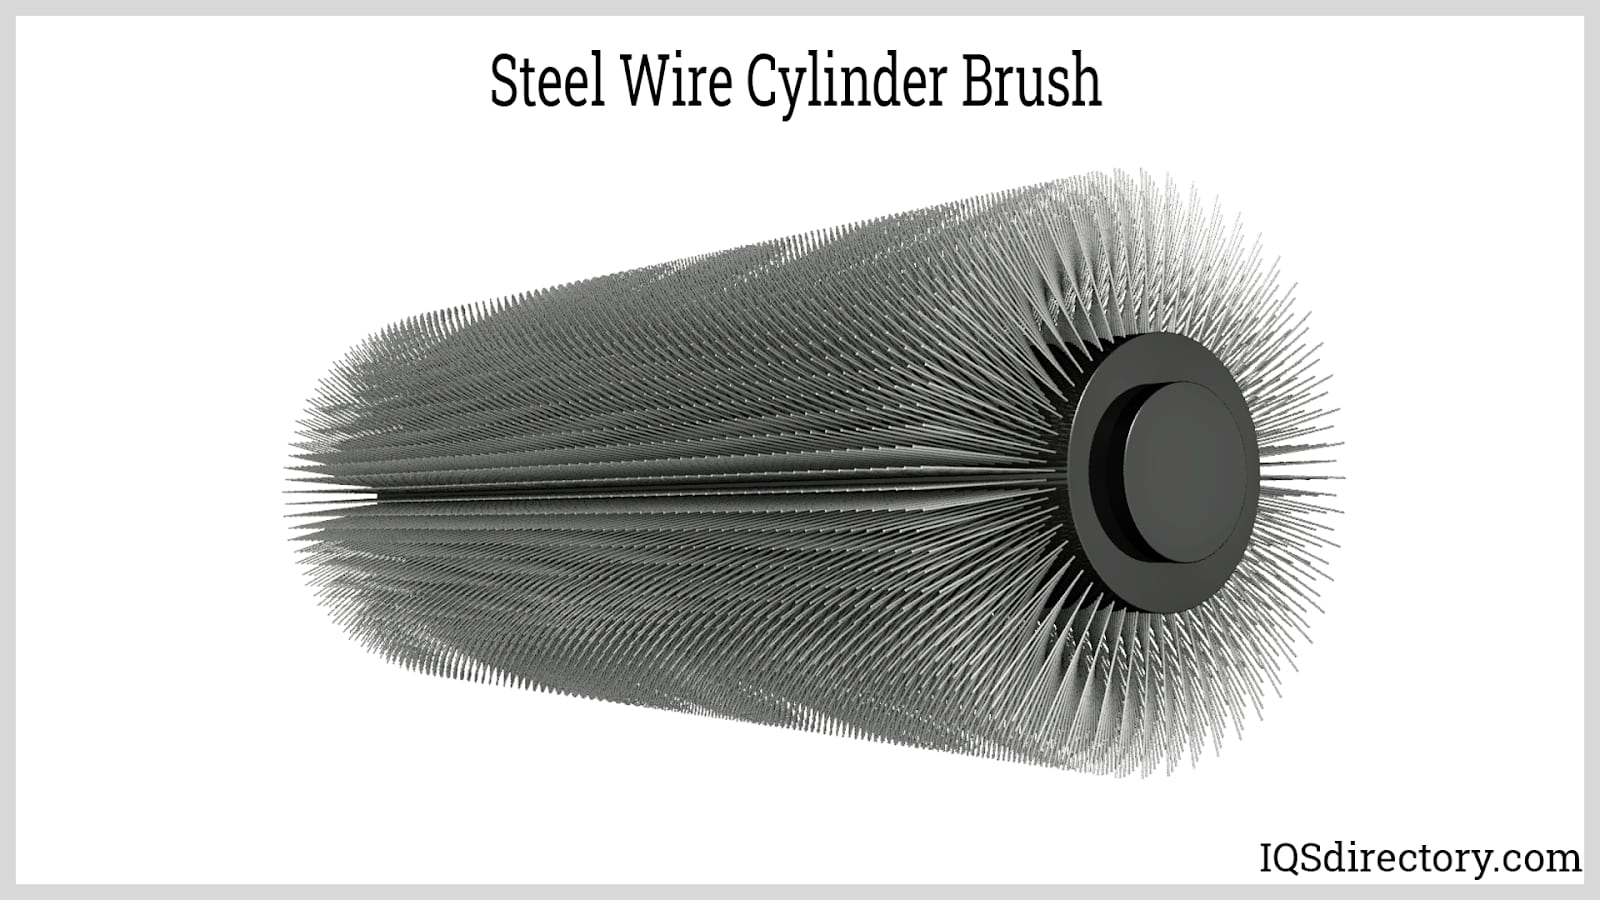 Steel Wire Cylinder Brush